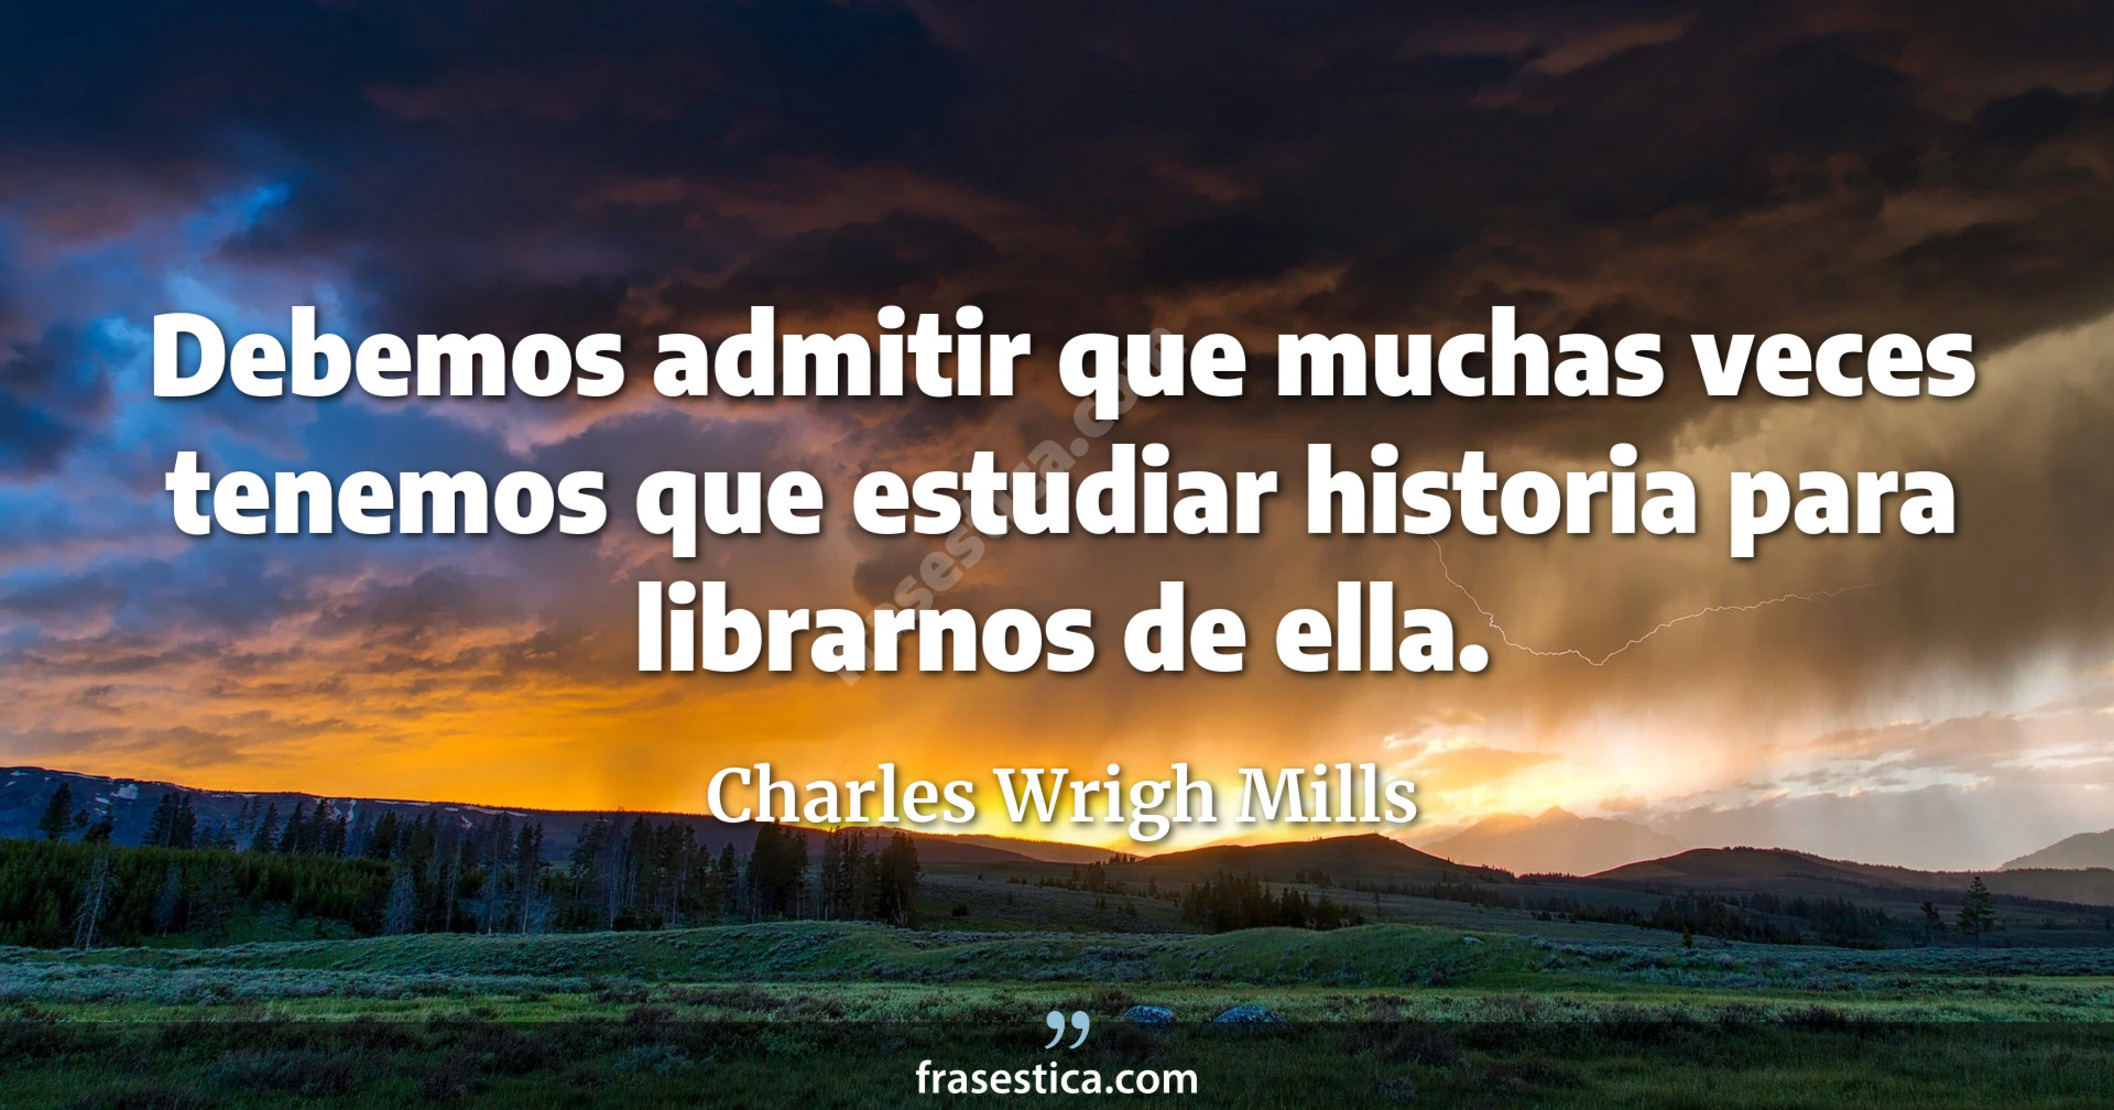 Debemos admitir que muchas veces tenemos que estudiar historia para librarnos de ella. - Charles Wrigh Mills